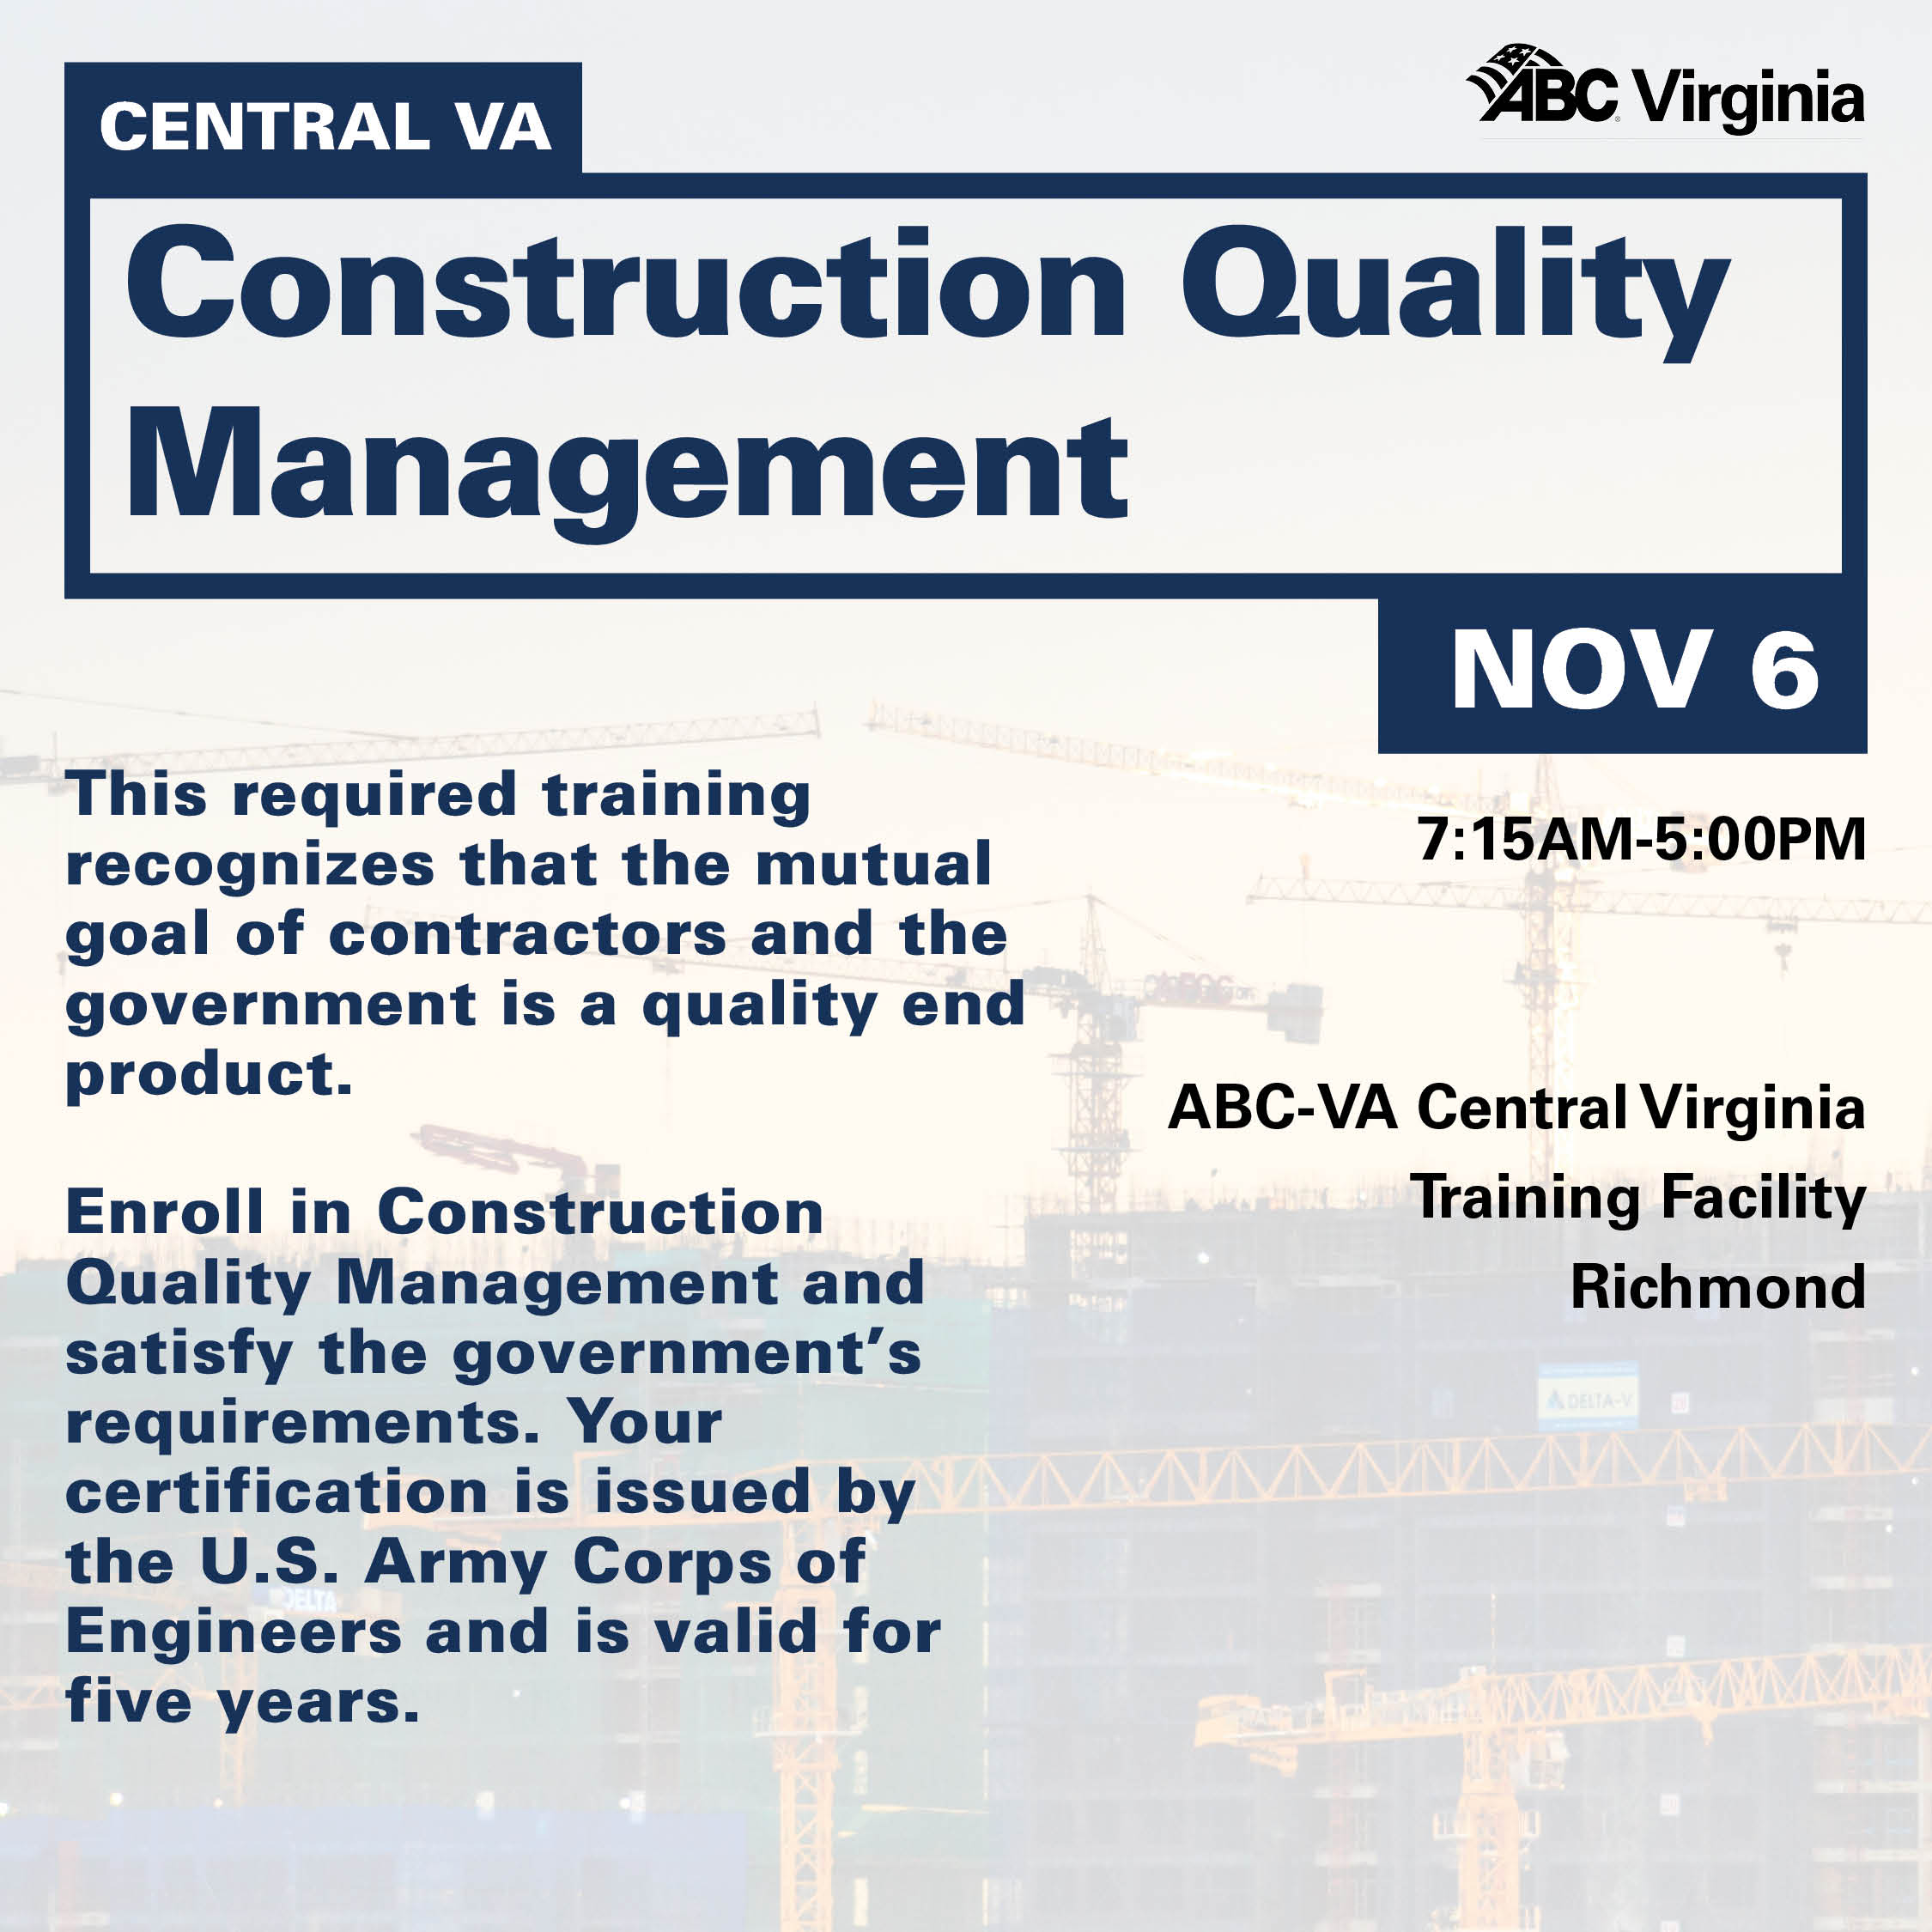 CV Construction Quality Management Nov 6 WEB